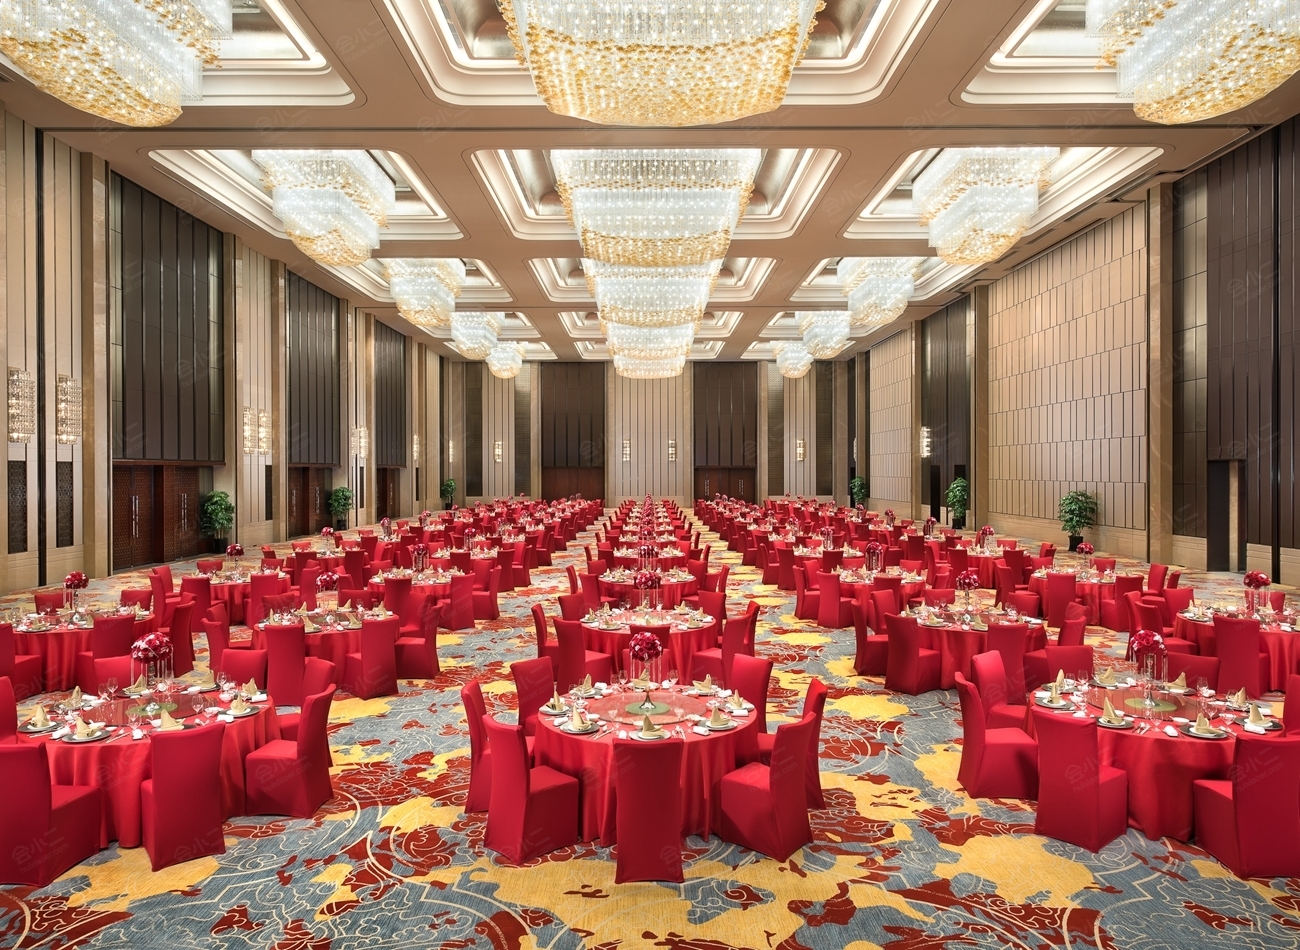 上海浦东香格里拉大酒店 -上海市文旅推广网-上海市文化和旅游局 提供专业文化和旅游及会展信息资讯